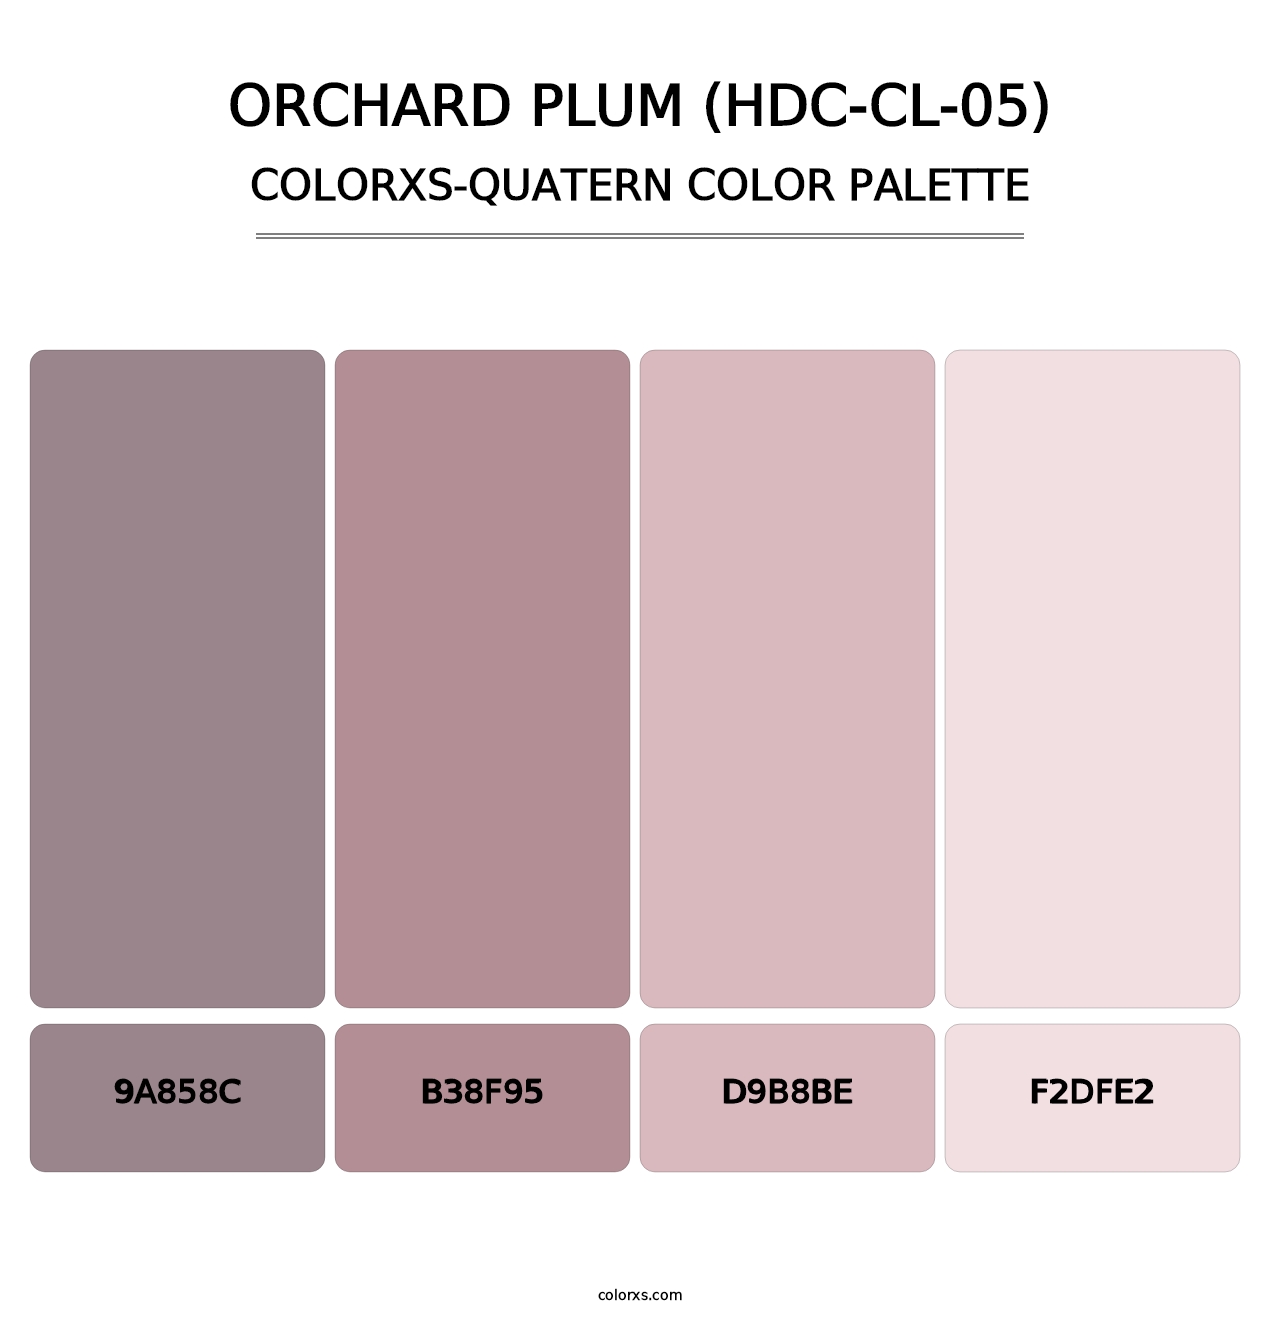 Orchard Plum (HDC-CL-05) - Colorxs Quatern Palette